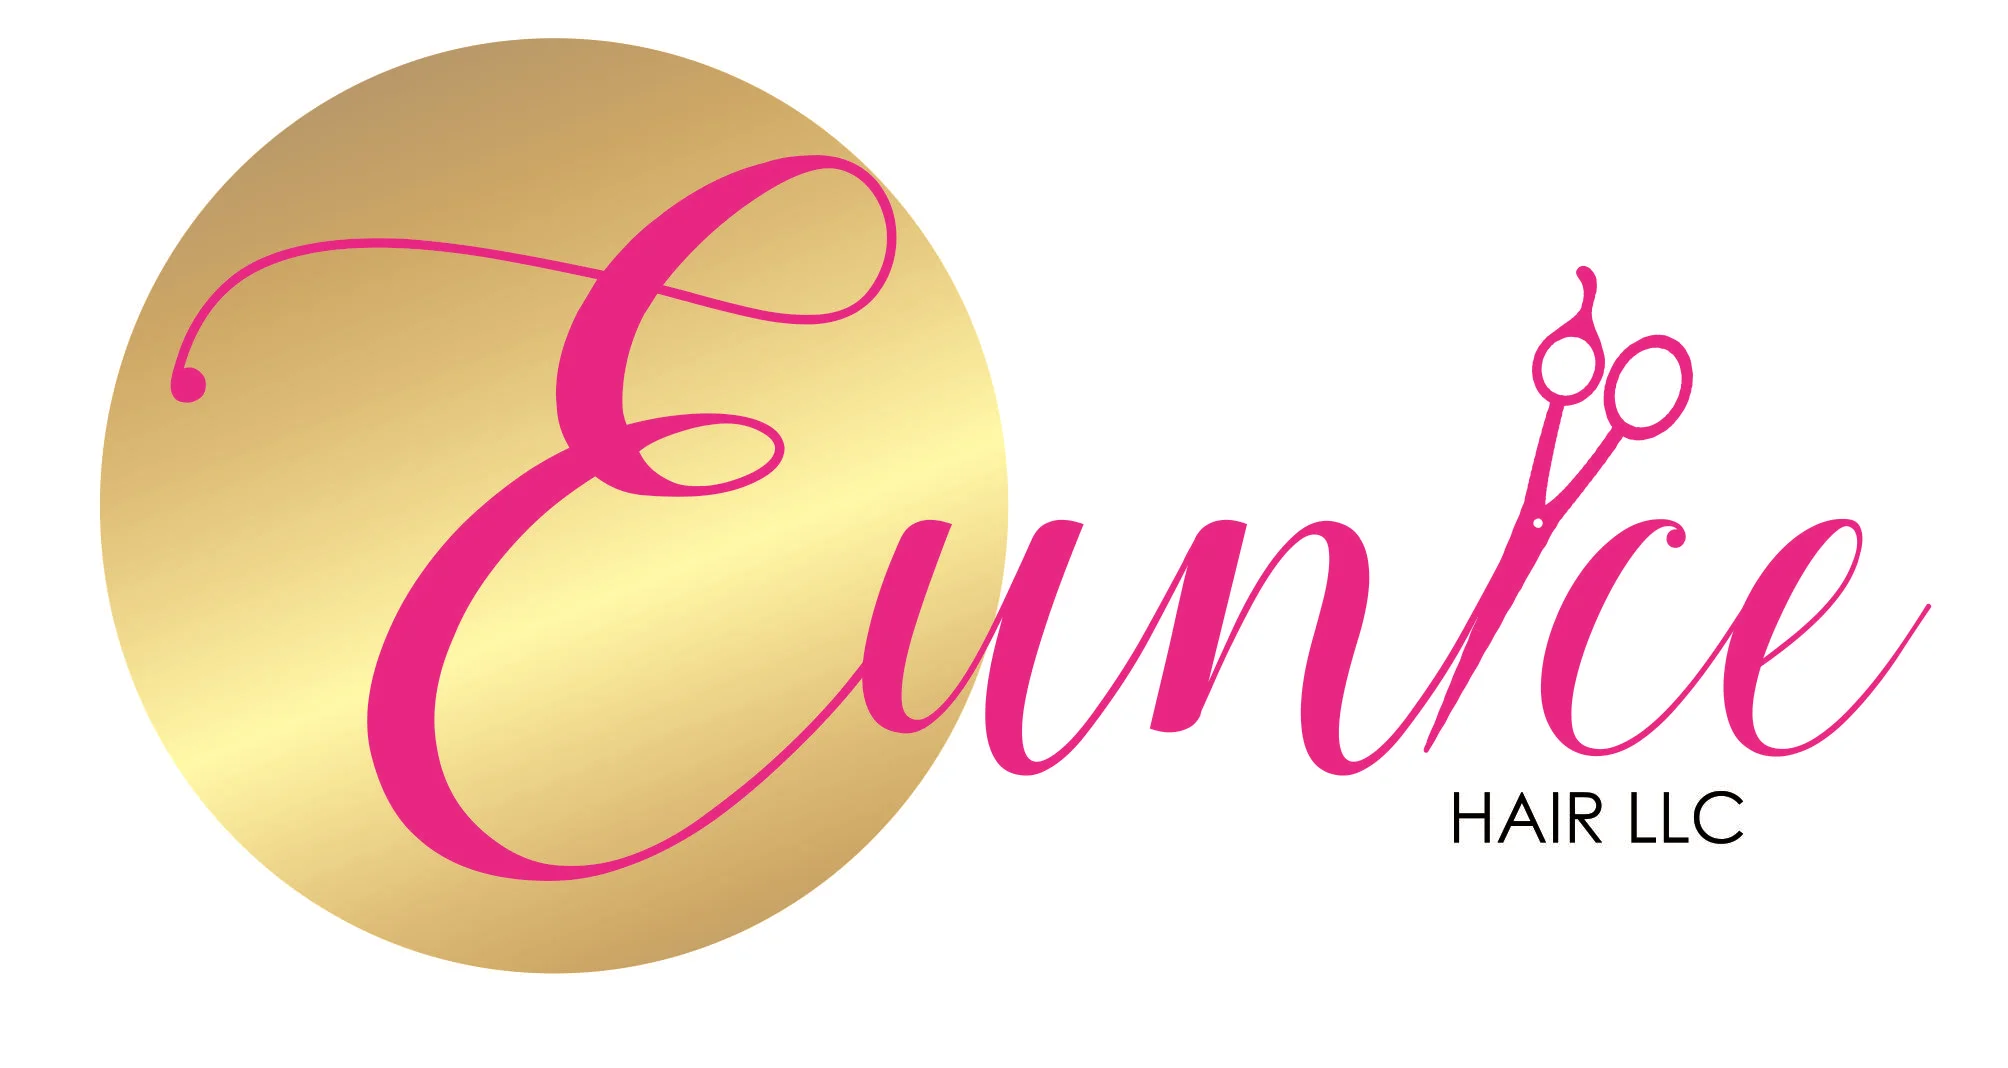 Eunice Hair LLC